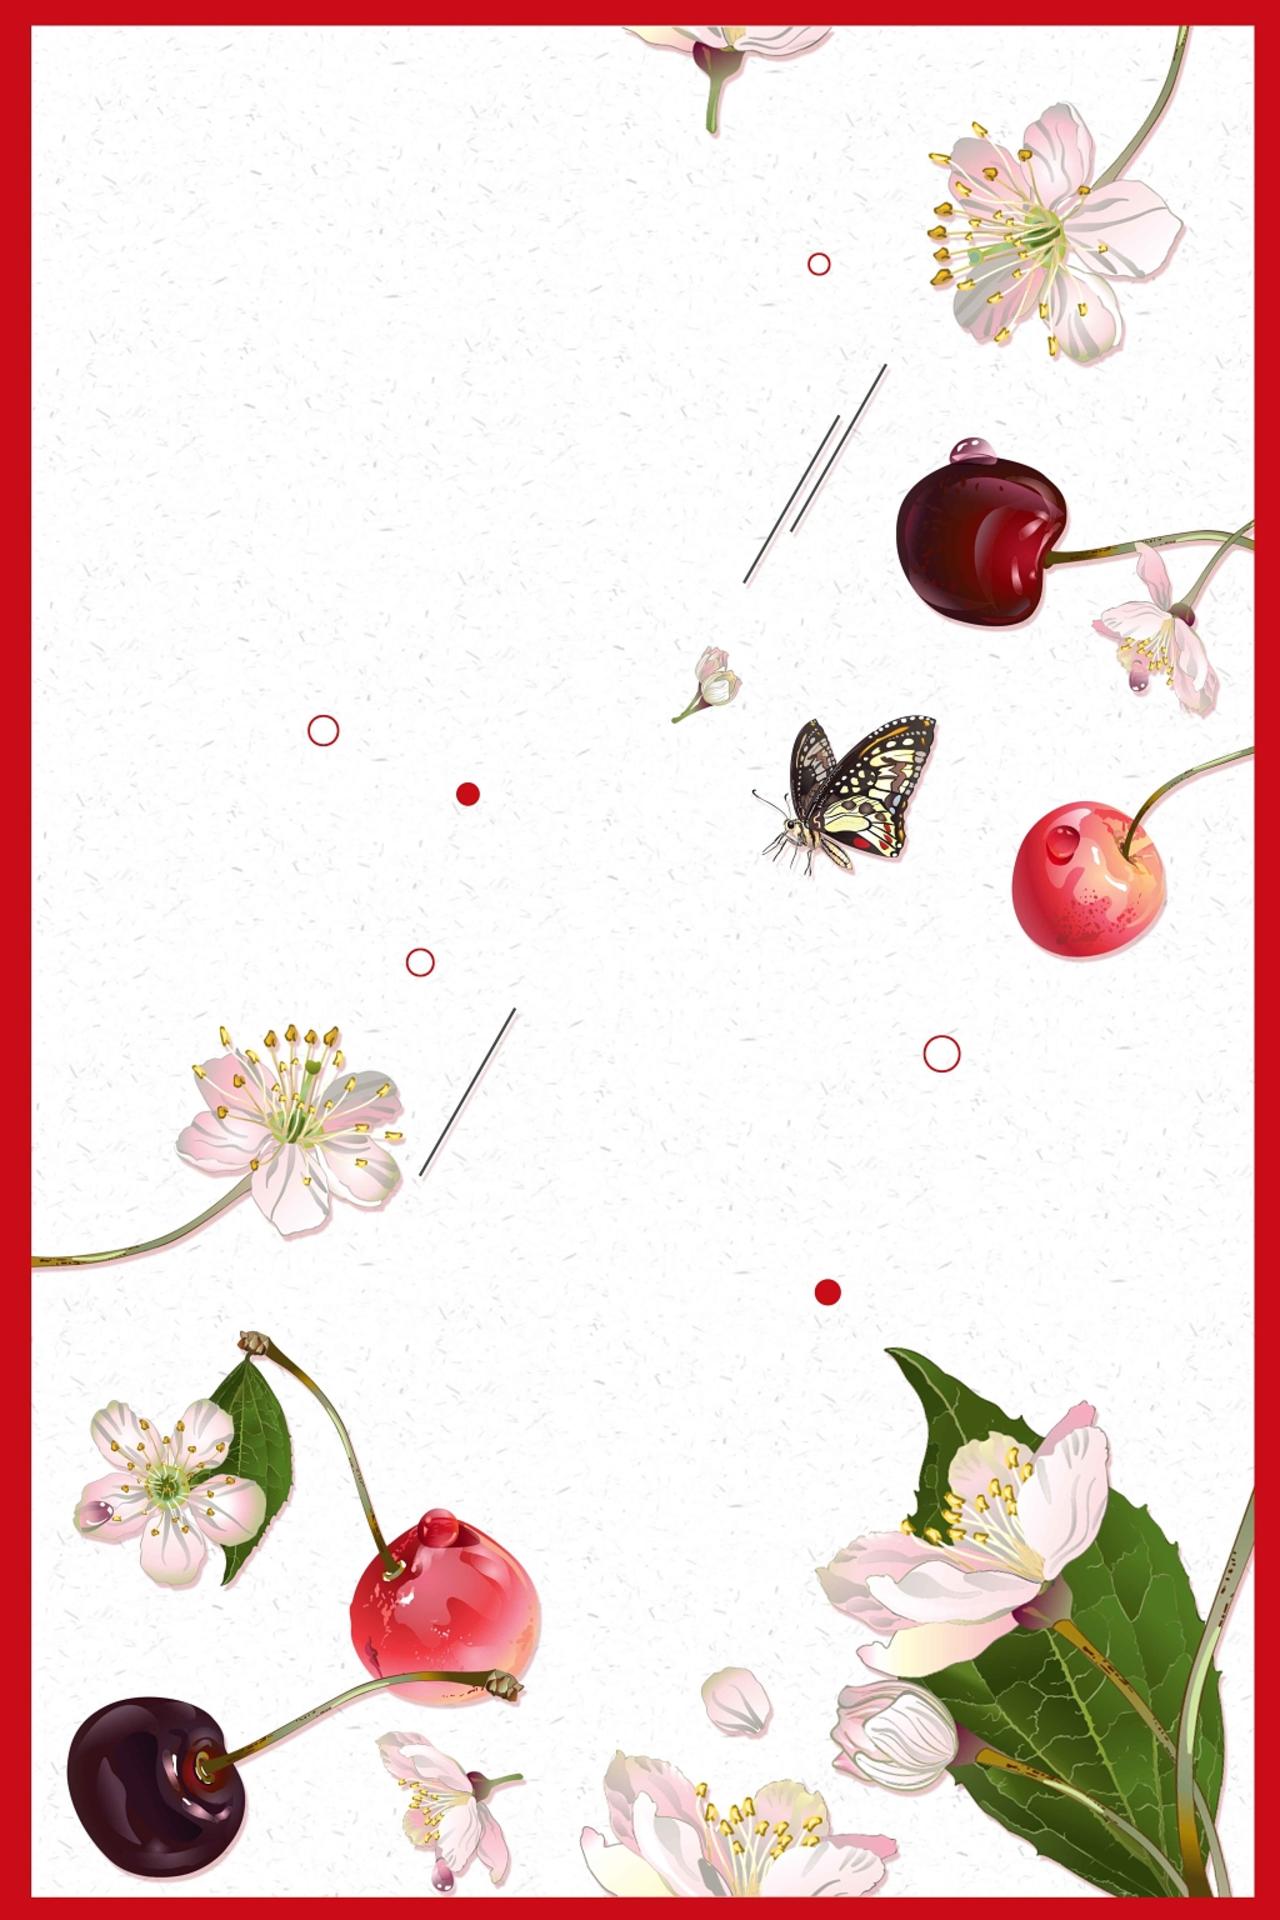 手绘边框红白矩形花草绿叶简约清新中国风樱桃车厘子水果宣传海报背景